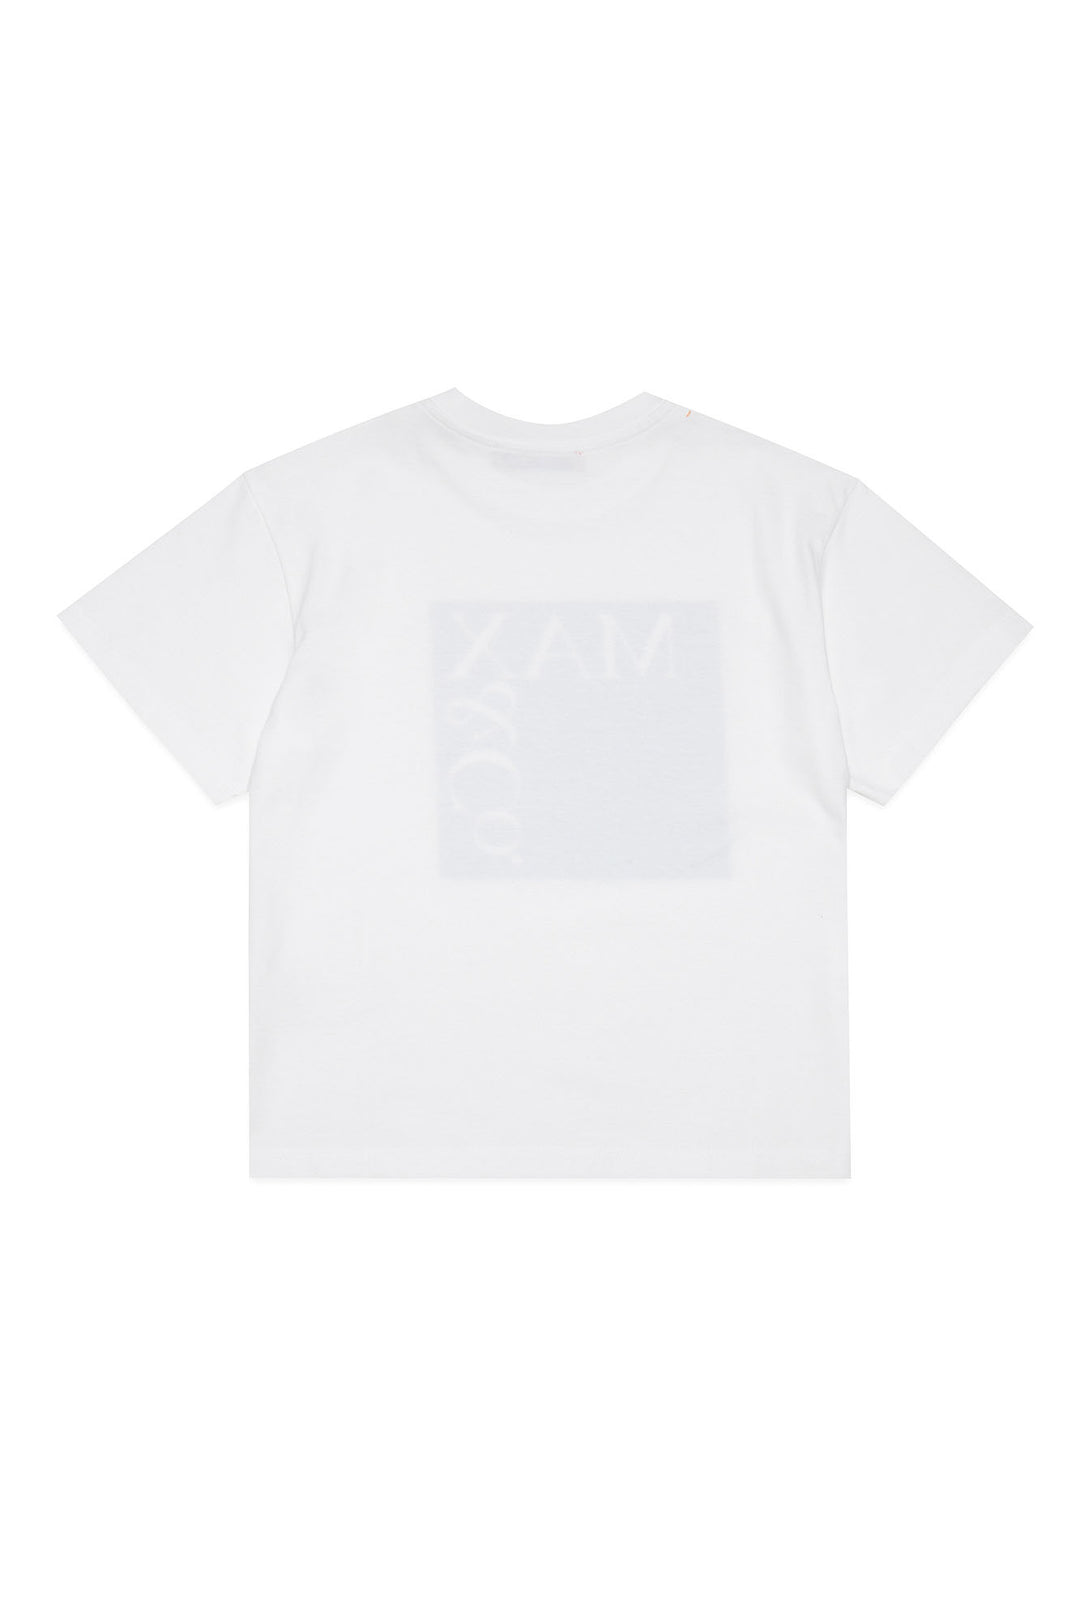 T-shirt bambino bianca/blu navy